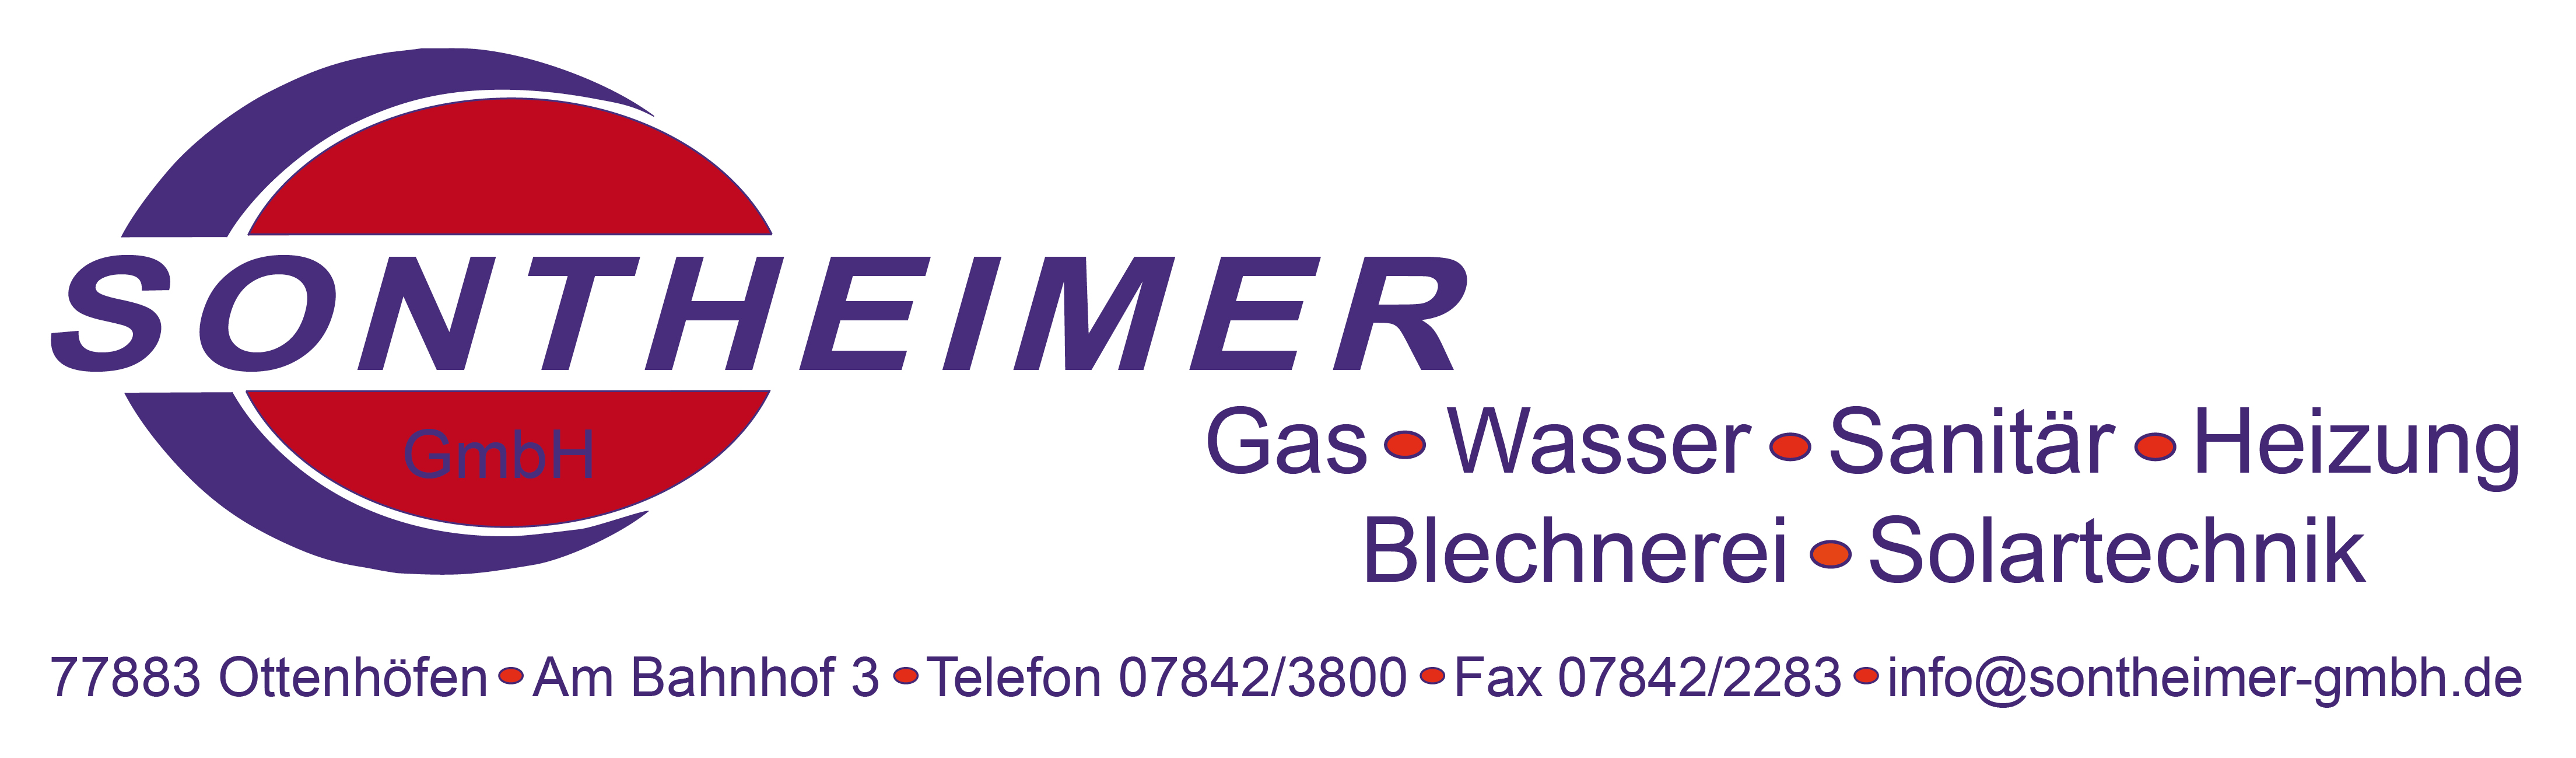  Sontheimer GmbH 